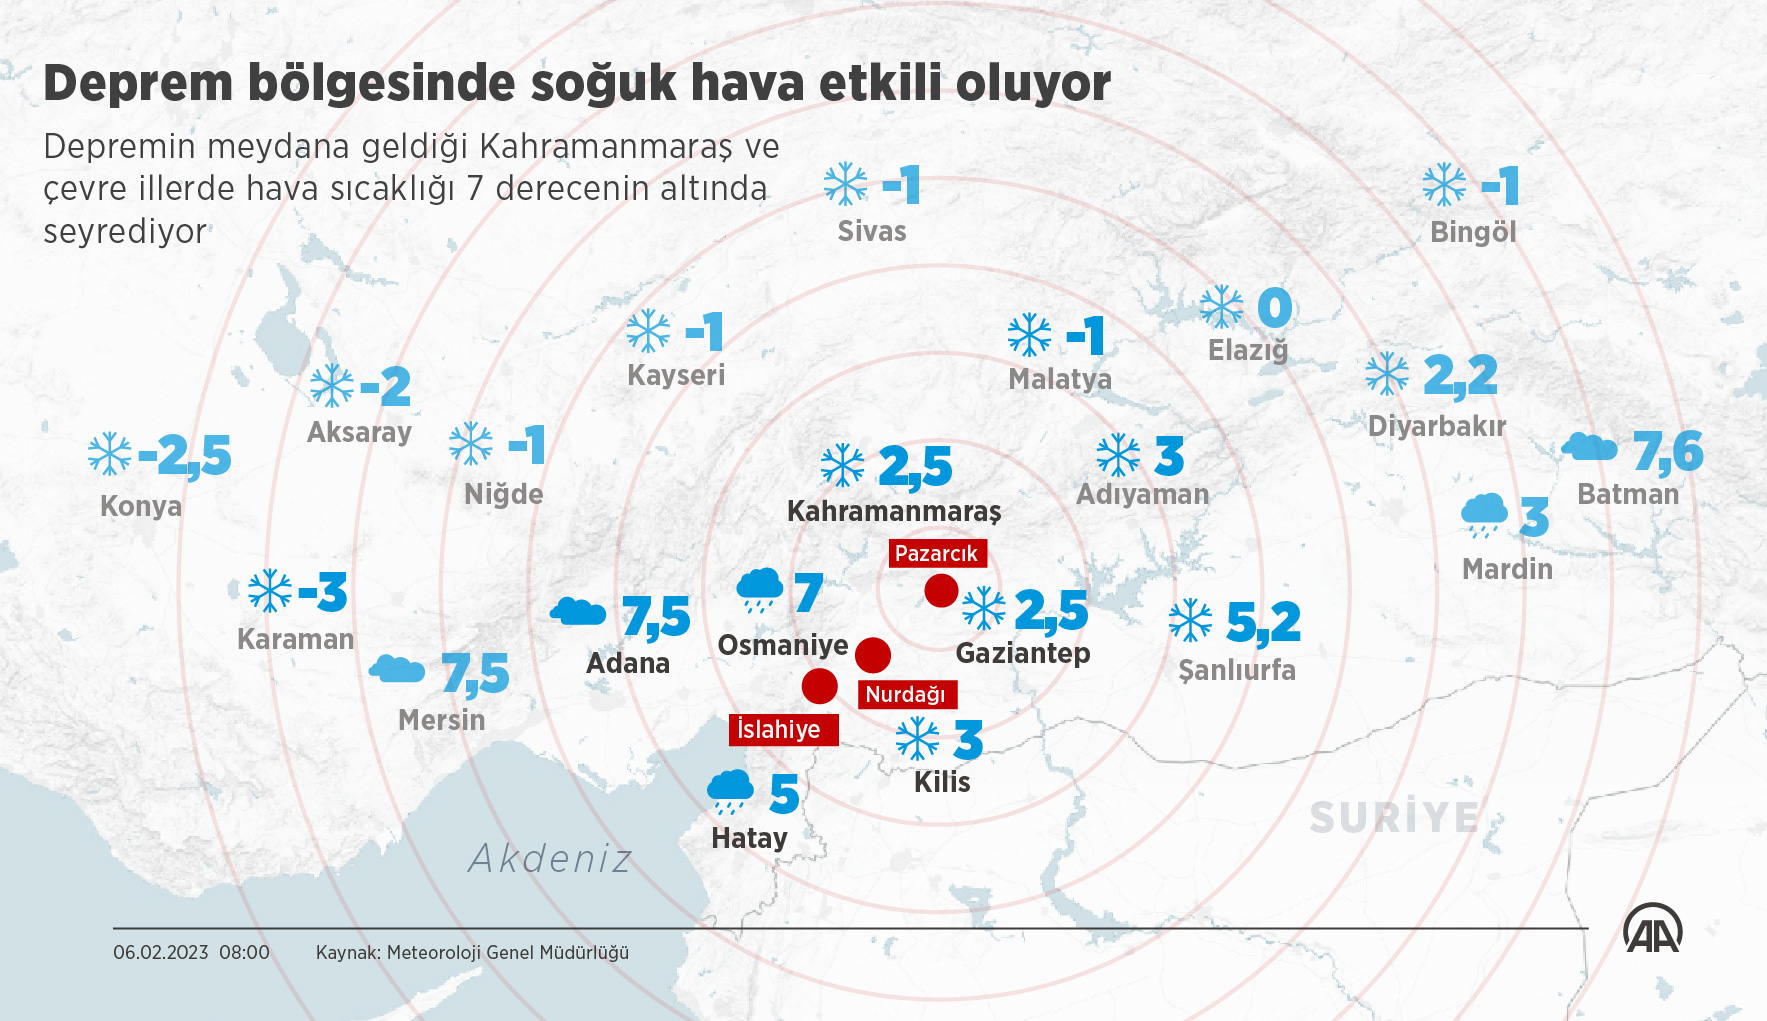 Турция февраль 2023. Карта землетрясения в Турции 6 февраля 2023. Землетрясение в Турции 2023 на карте. Землетрясение в Турции 2023 года на карте. Карта землетрясений в Турции февраль 2023.